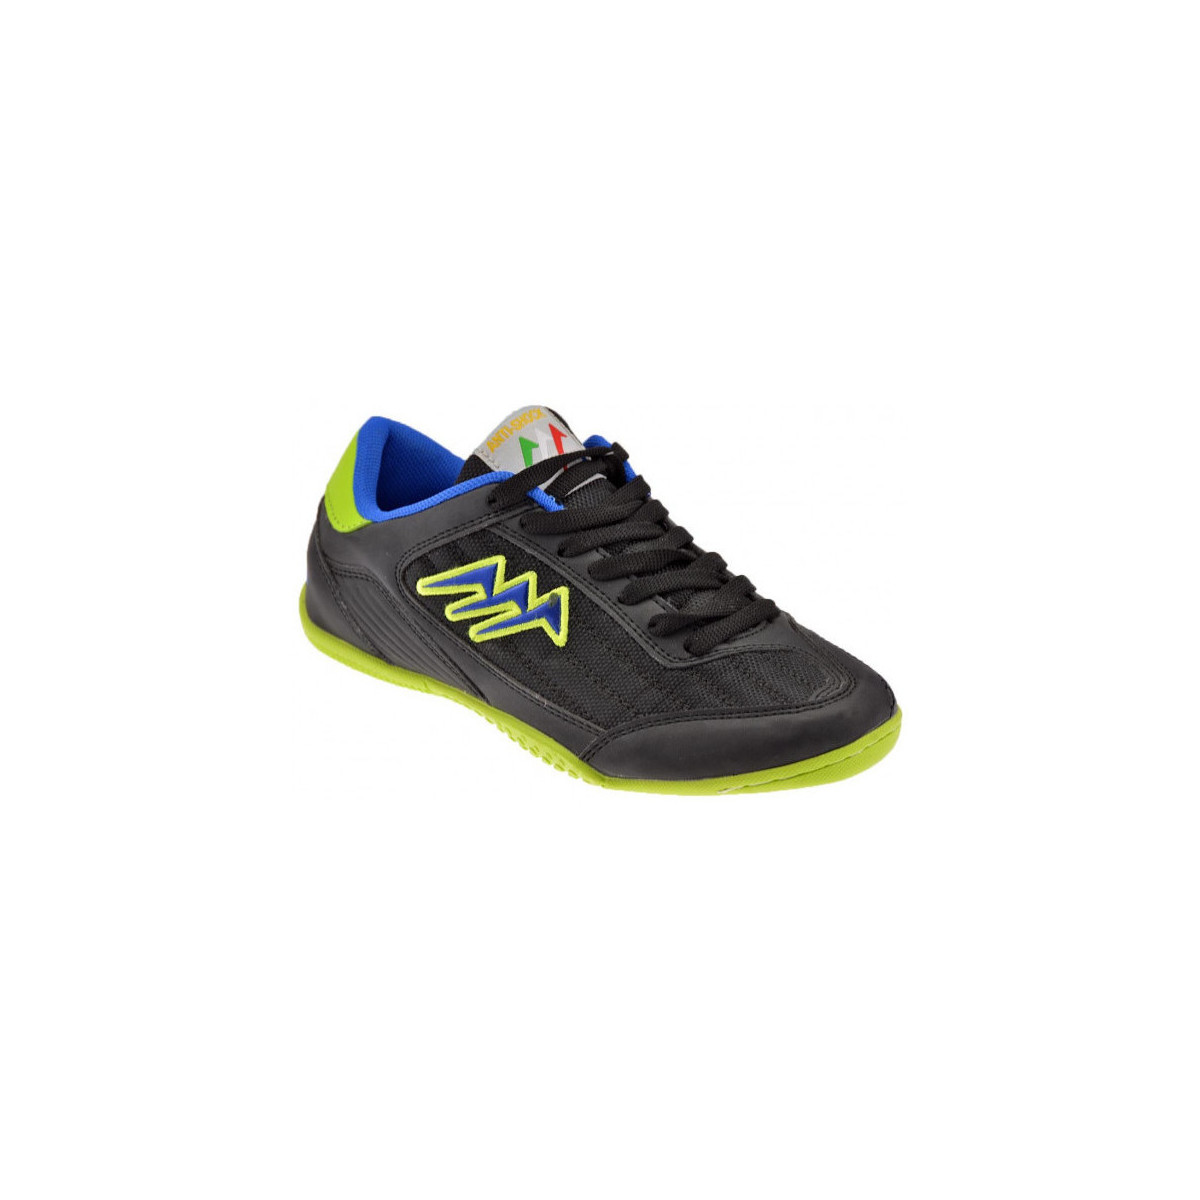 Schoenen Heren Sneakers Agla K350Indoor Soccer Zwart